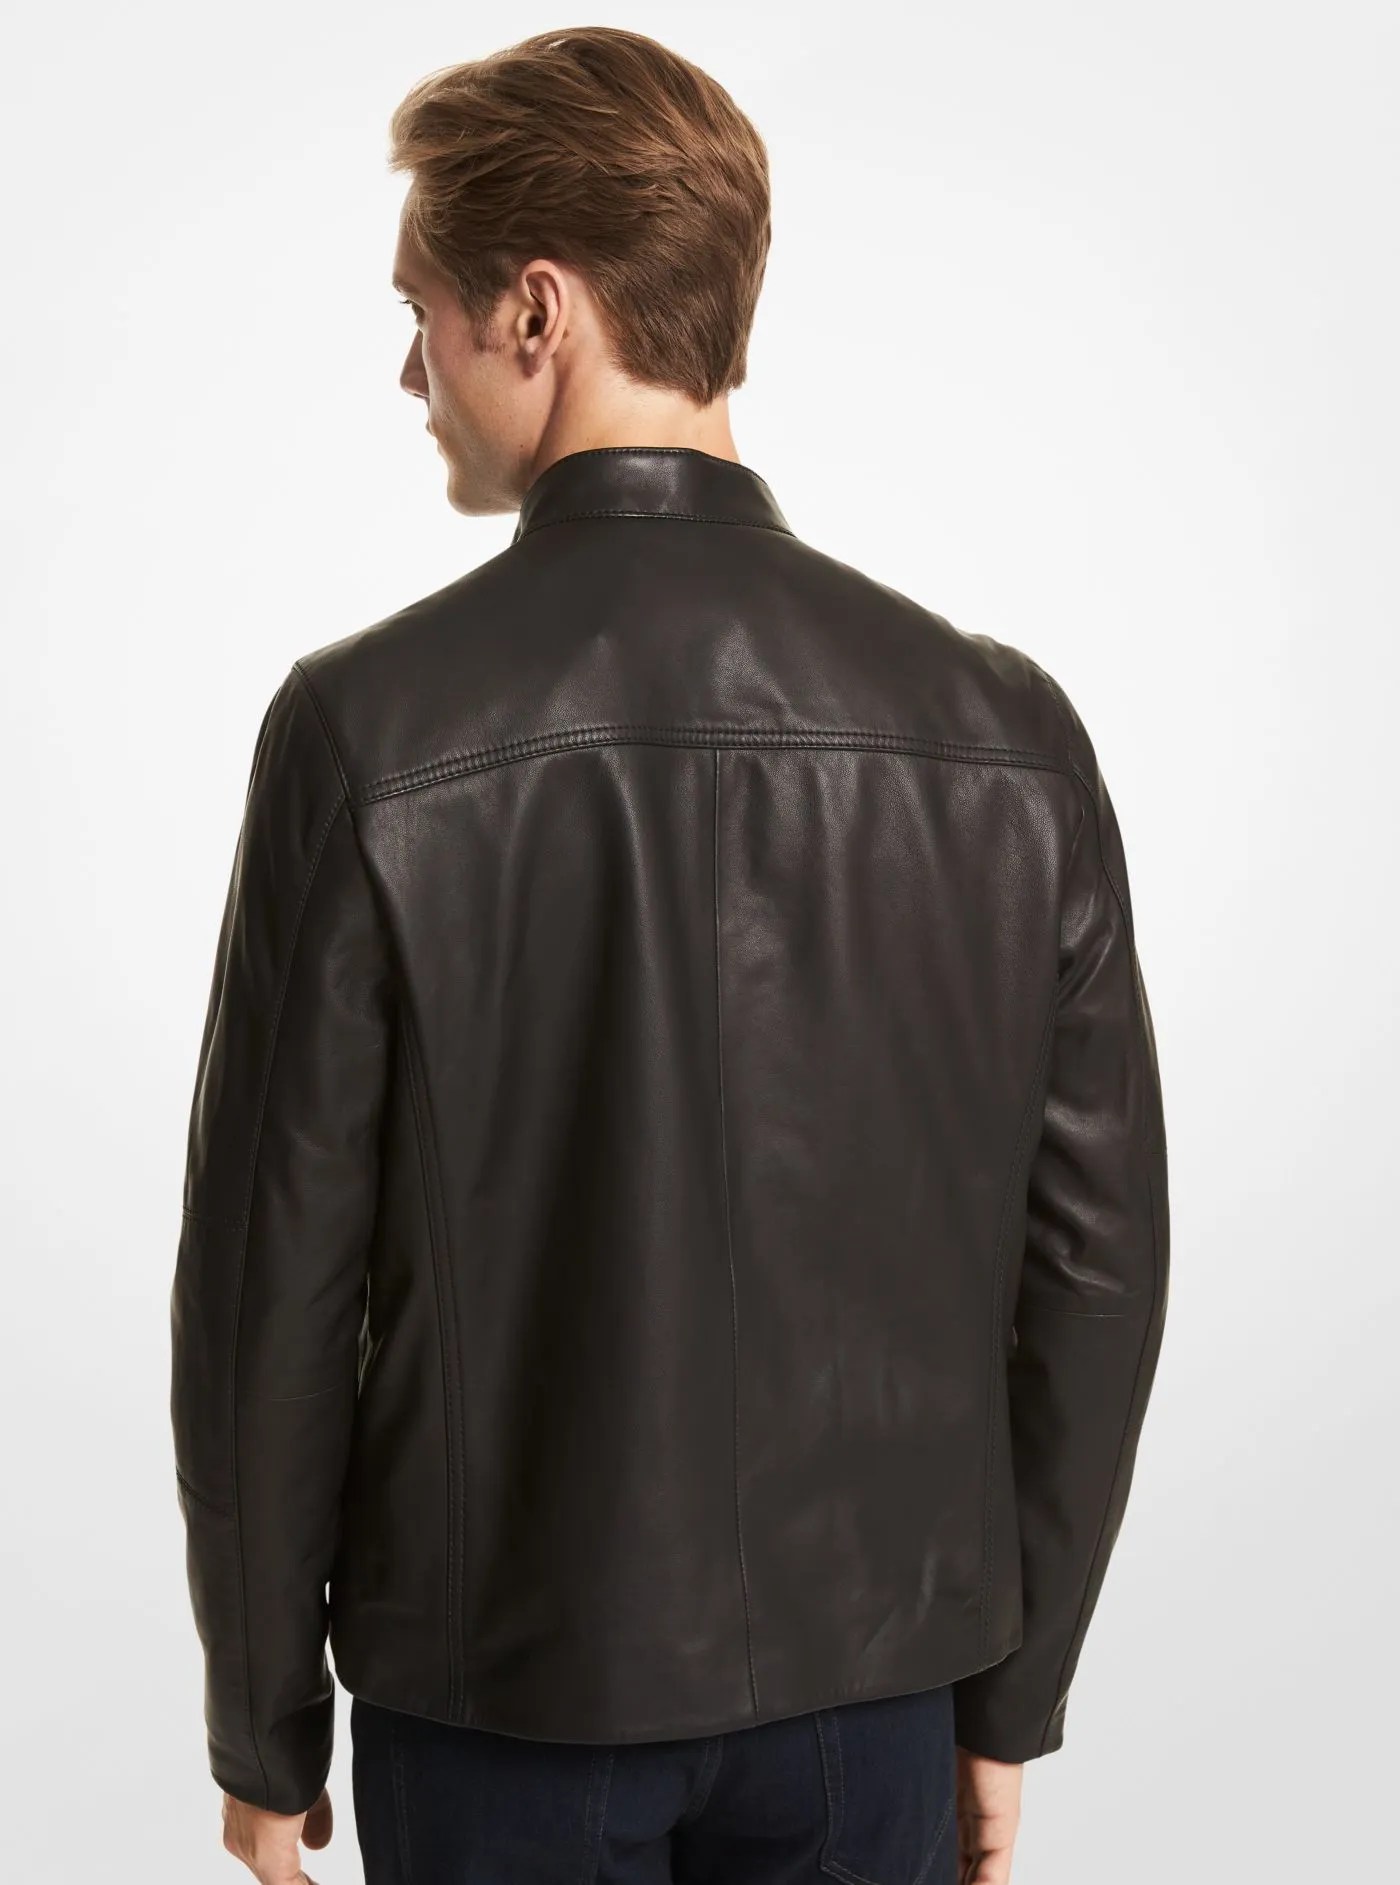 black-trucker-leather-jacket-100-genuine-sheepskin-with-supple-texture (1)